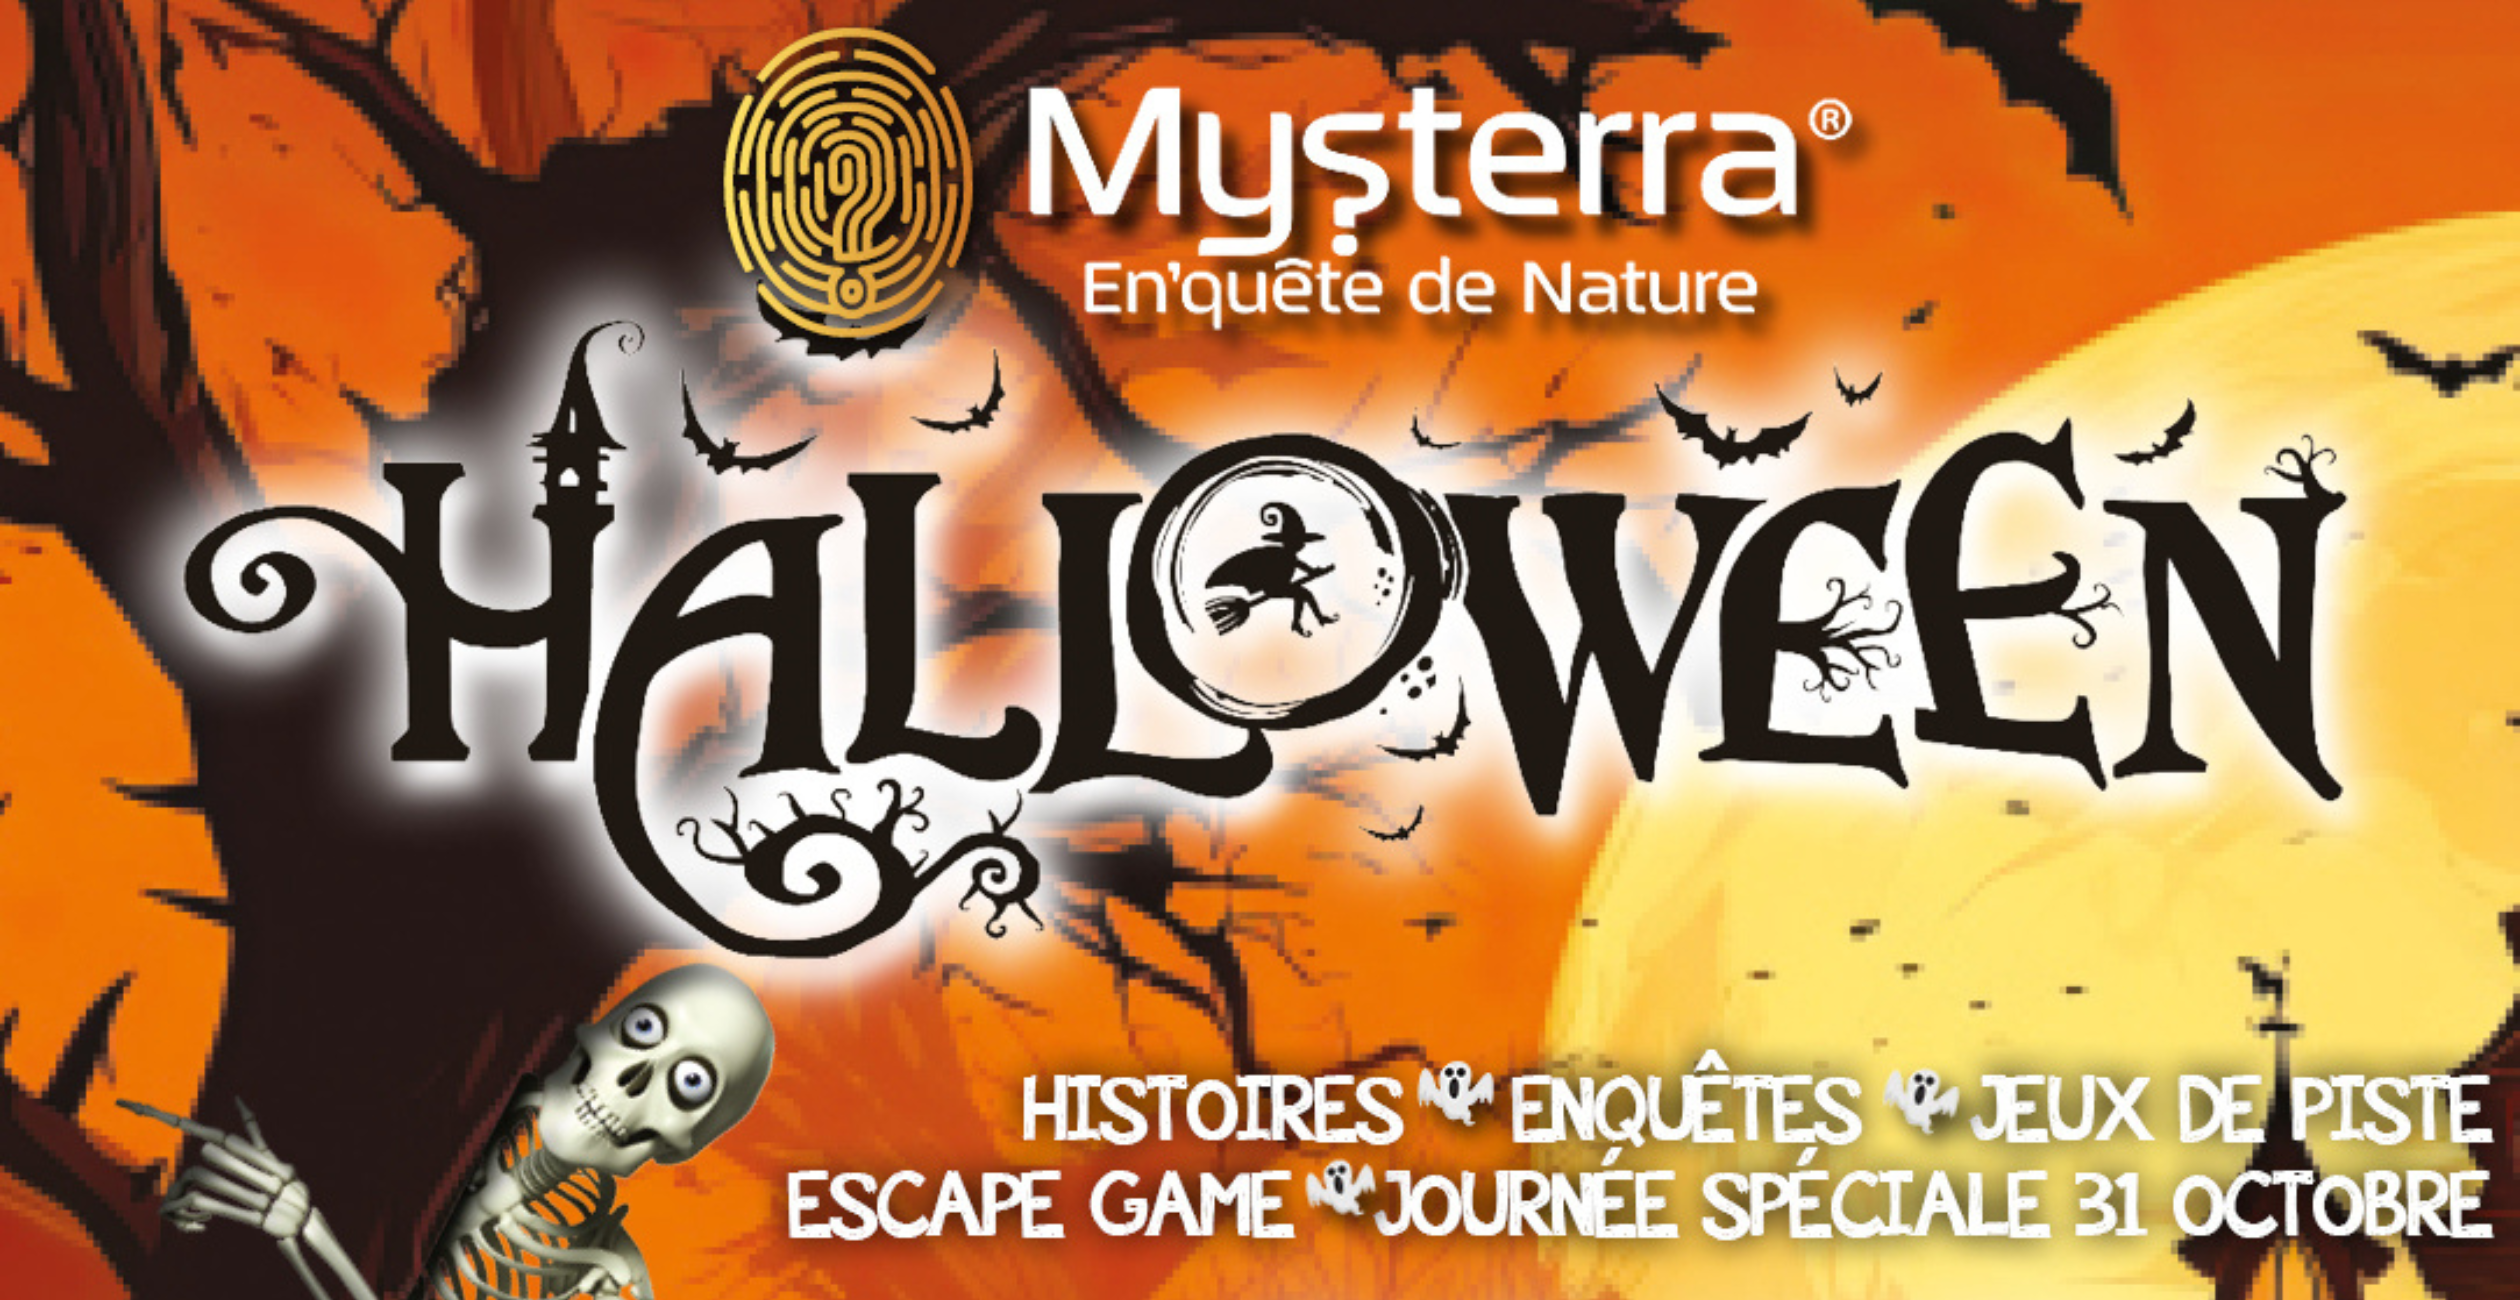 Affrontez les énigmes d'Halloween à Mysterra, le parc de Montendre, au sud de Jonzac